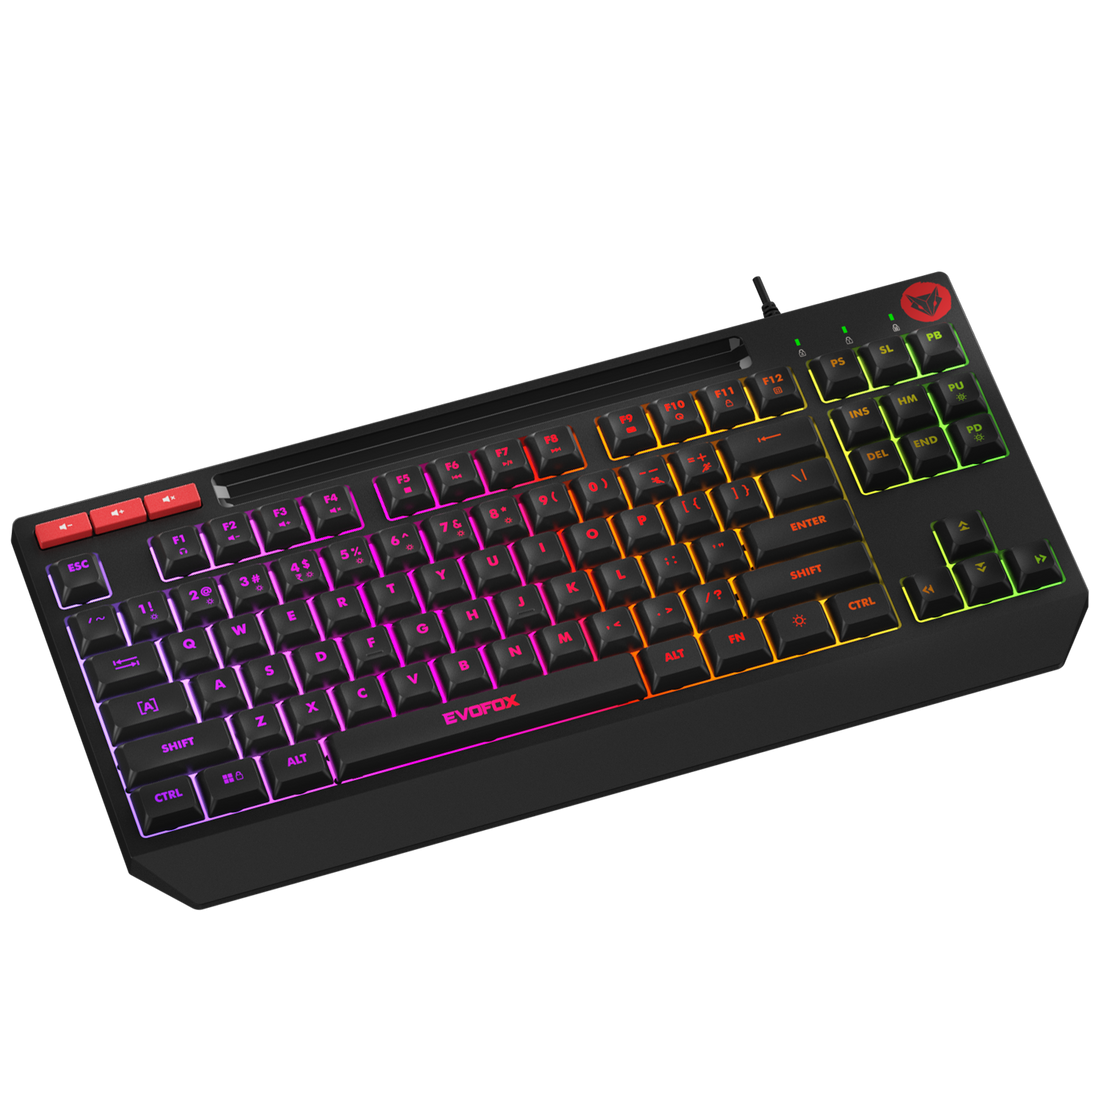 EvoFox Deathray TKL RGB Gaming Keyboard